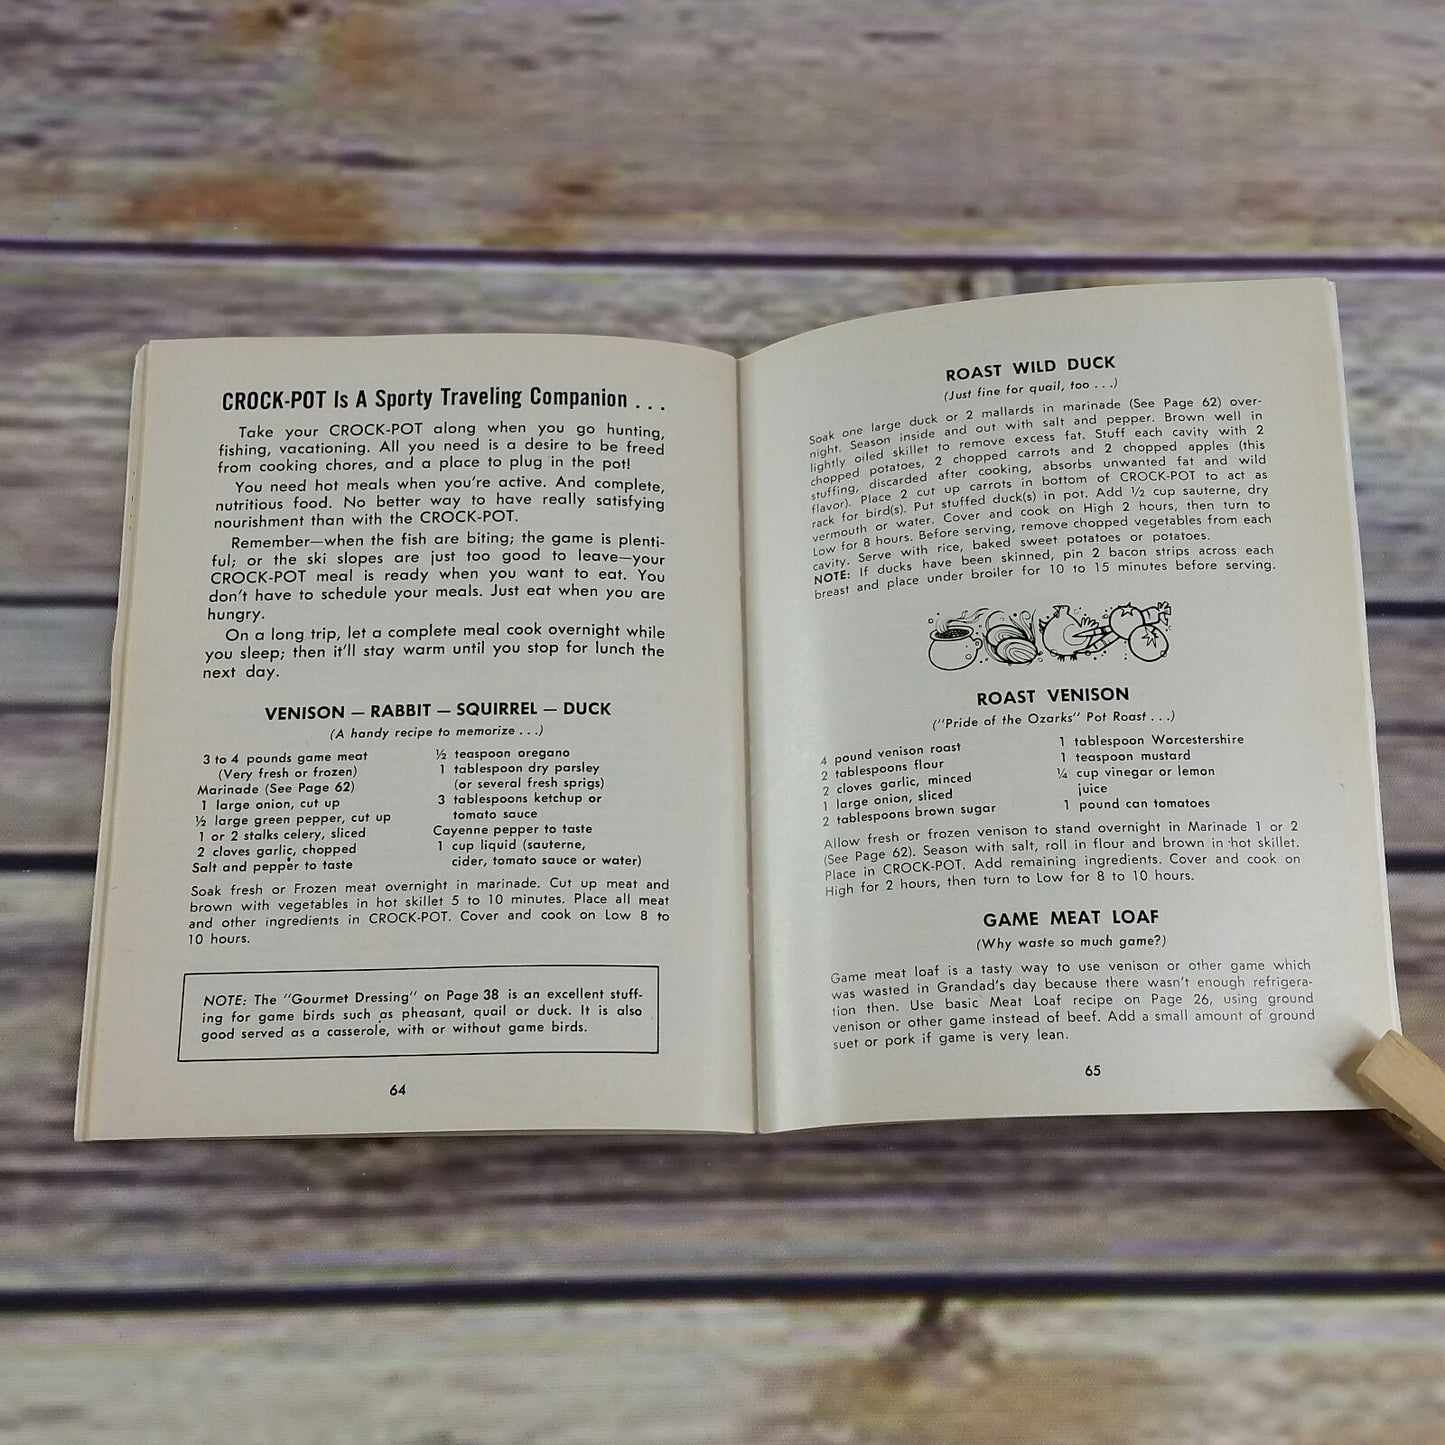 Vintage Rival Crock Pot Cookbook Owner's Manual Model Recipes Slow Cooker  3300 3100-3103 Paperback Booklet 